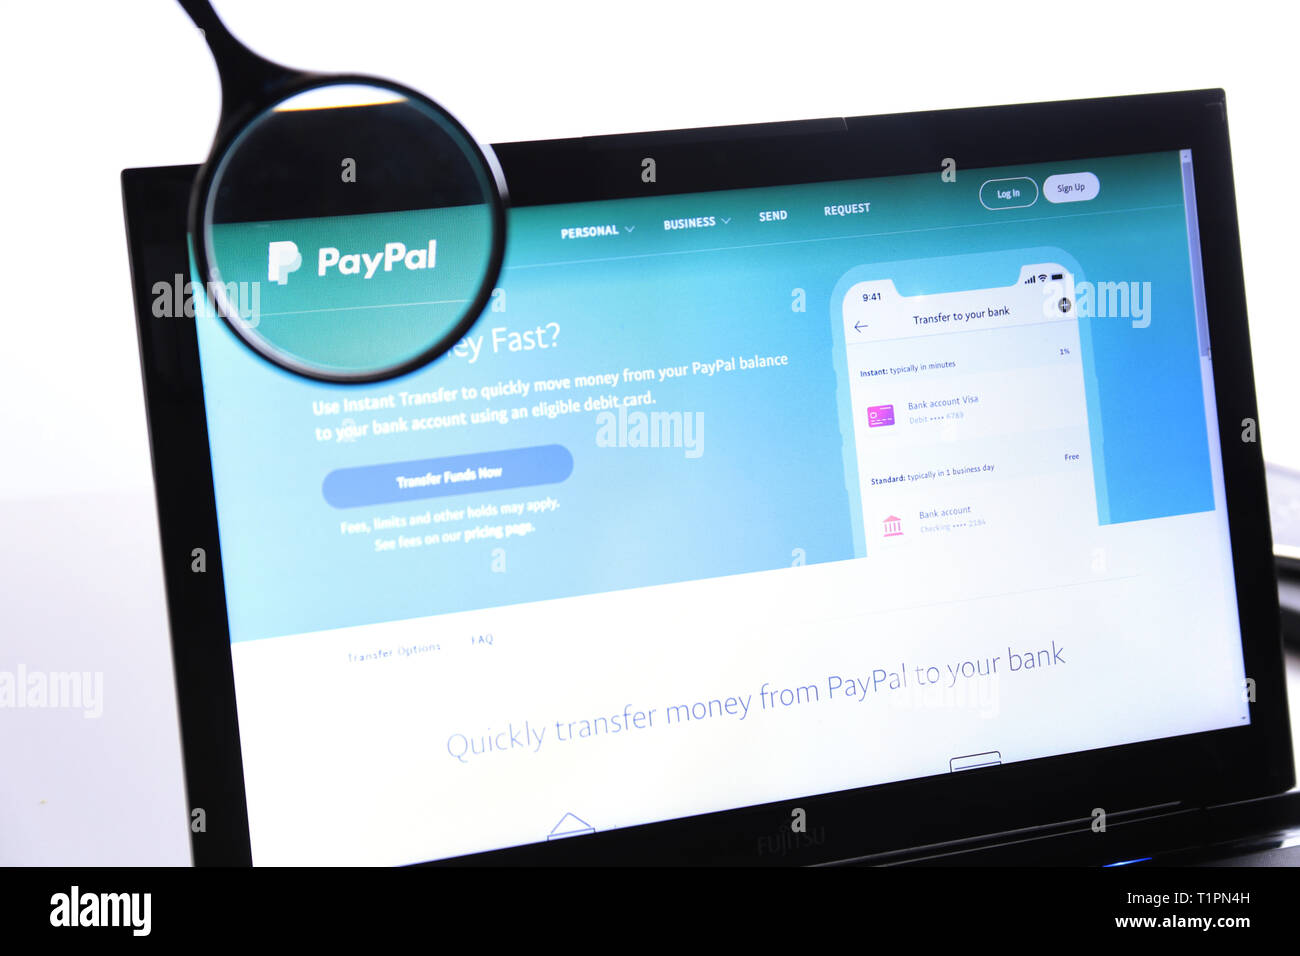 New York, USA - 25 mars 2019 : Editorial du site de Paypal logo visible sur l'écran. Paypal est un Américain et de paiement en ligne Banque D'Images